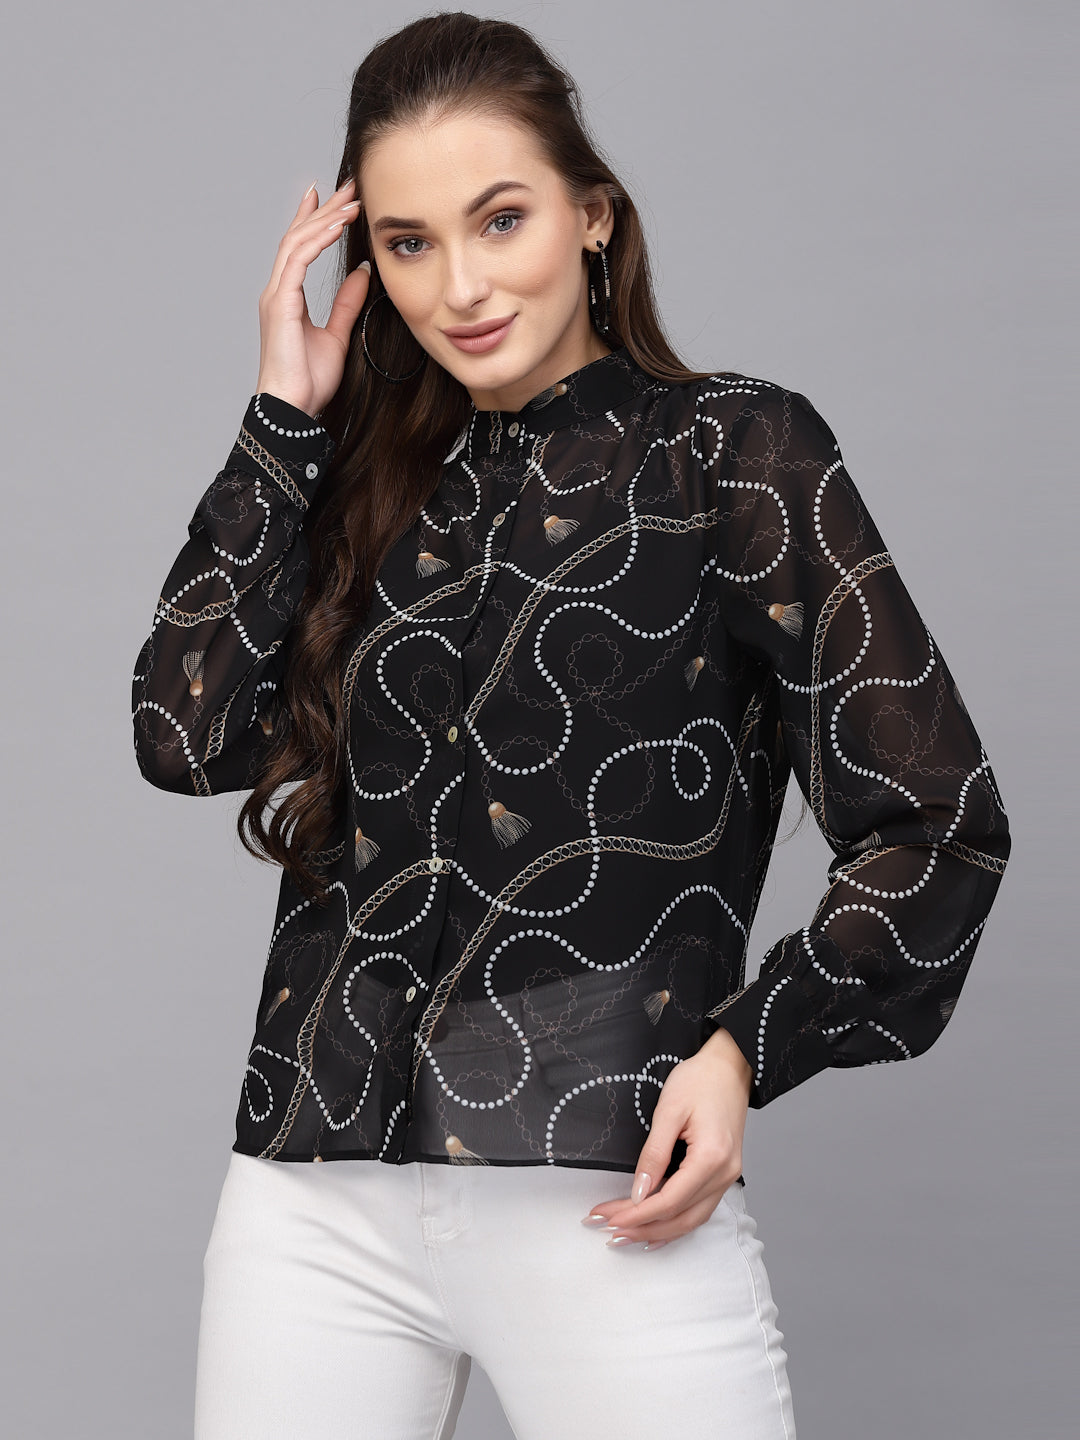 Valbone Women’s Black Georgette Printed Shirt Full Sleeves